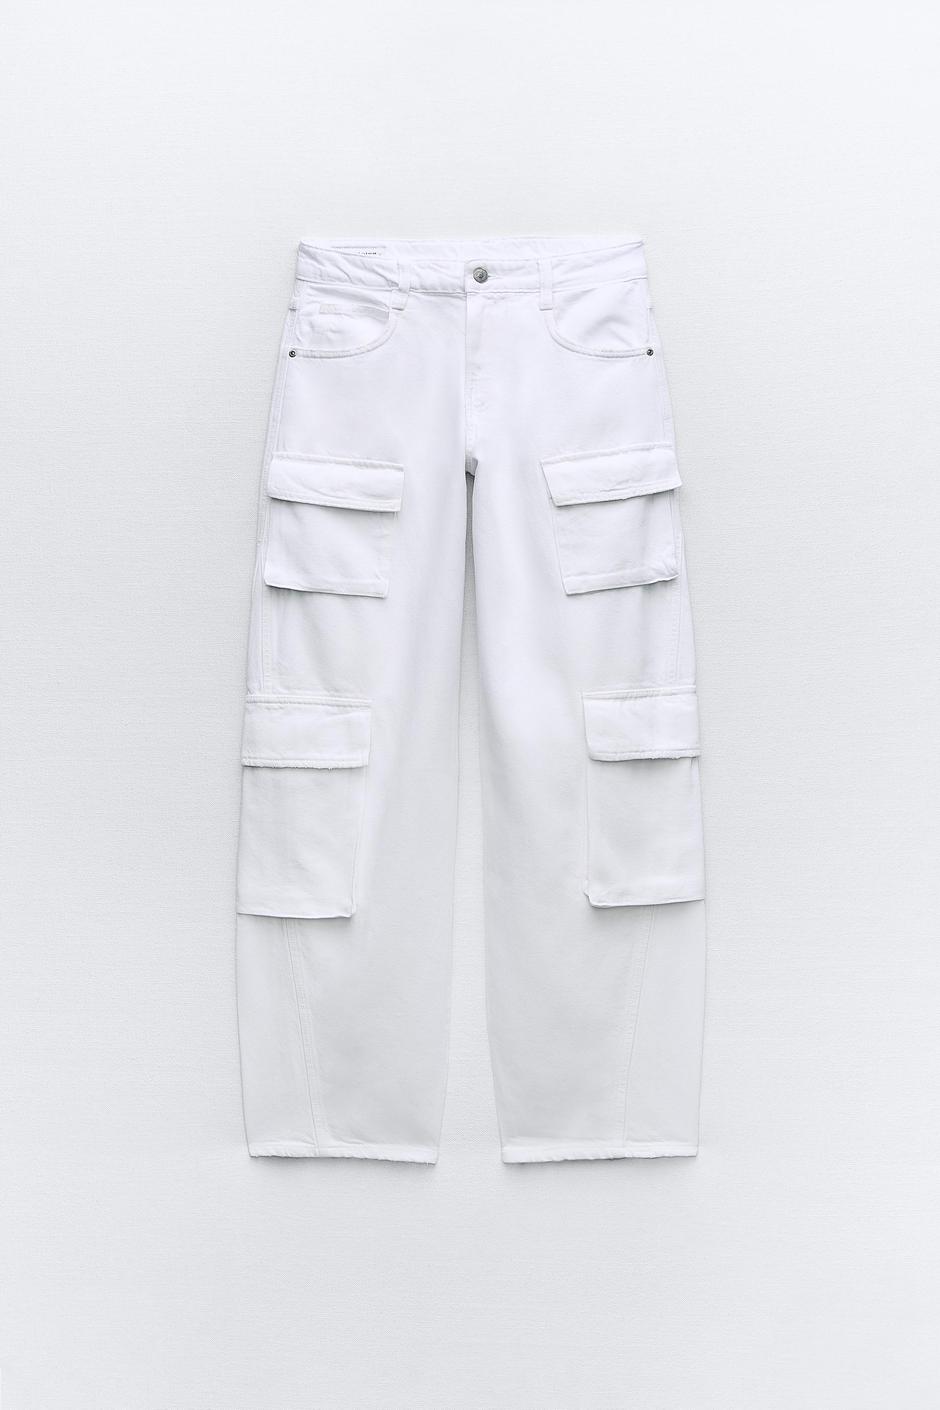 Foto: Zara, hlače (prije 39,95 - sada 19,99 eura) | Autor: Zara